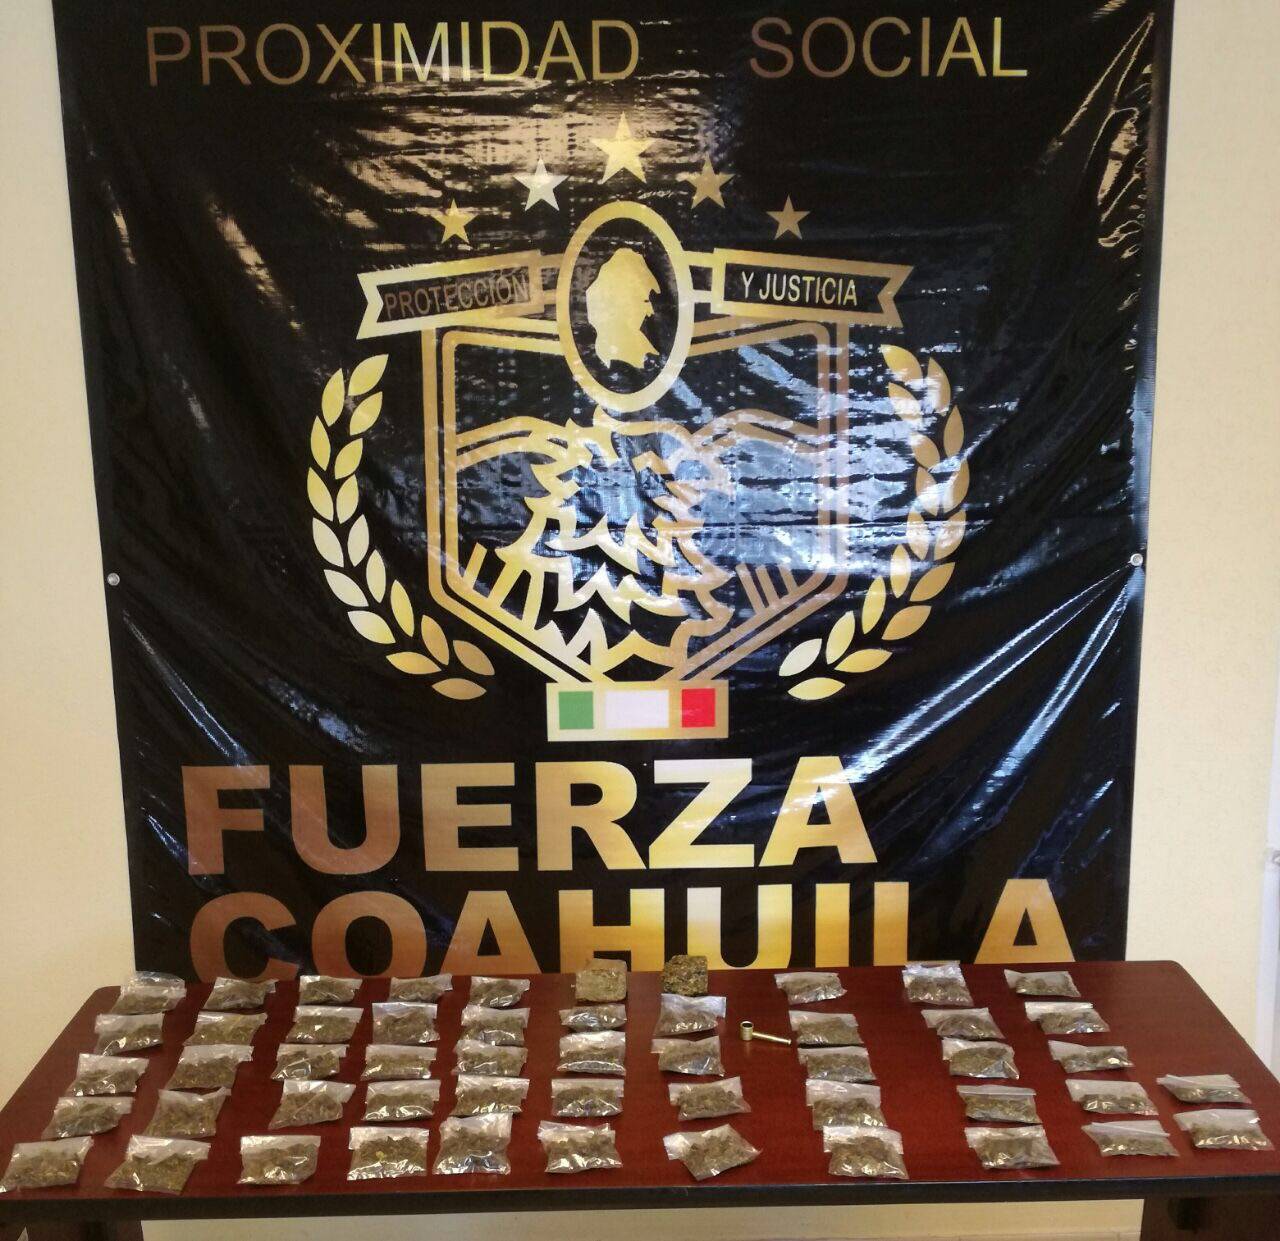 Aseguramiento. Elementos de Fuerza Coahuila de Proximidad Social detuvieron al presunto distribuidor de drogas.